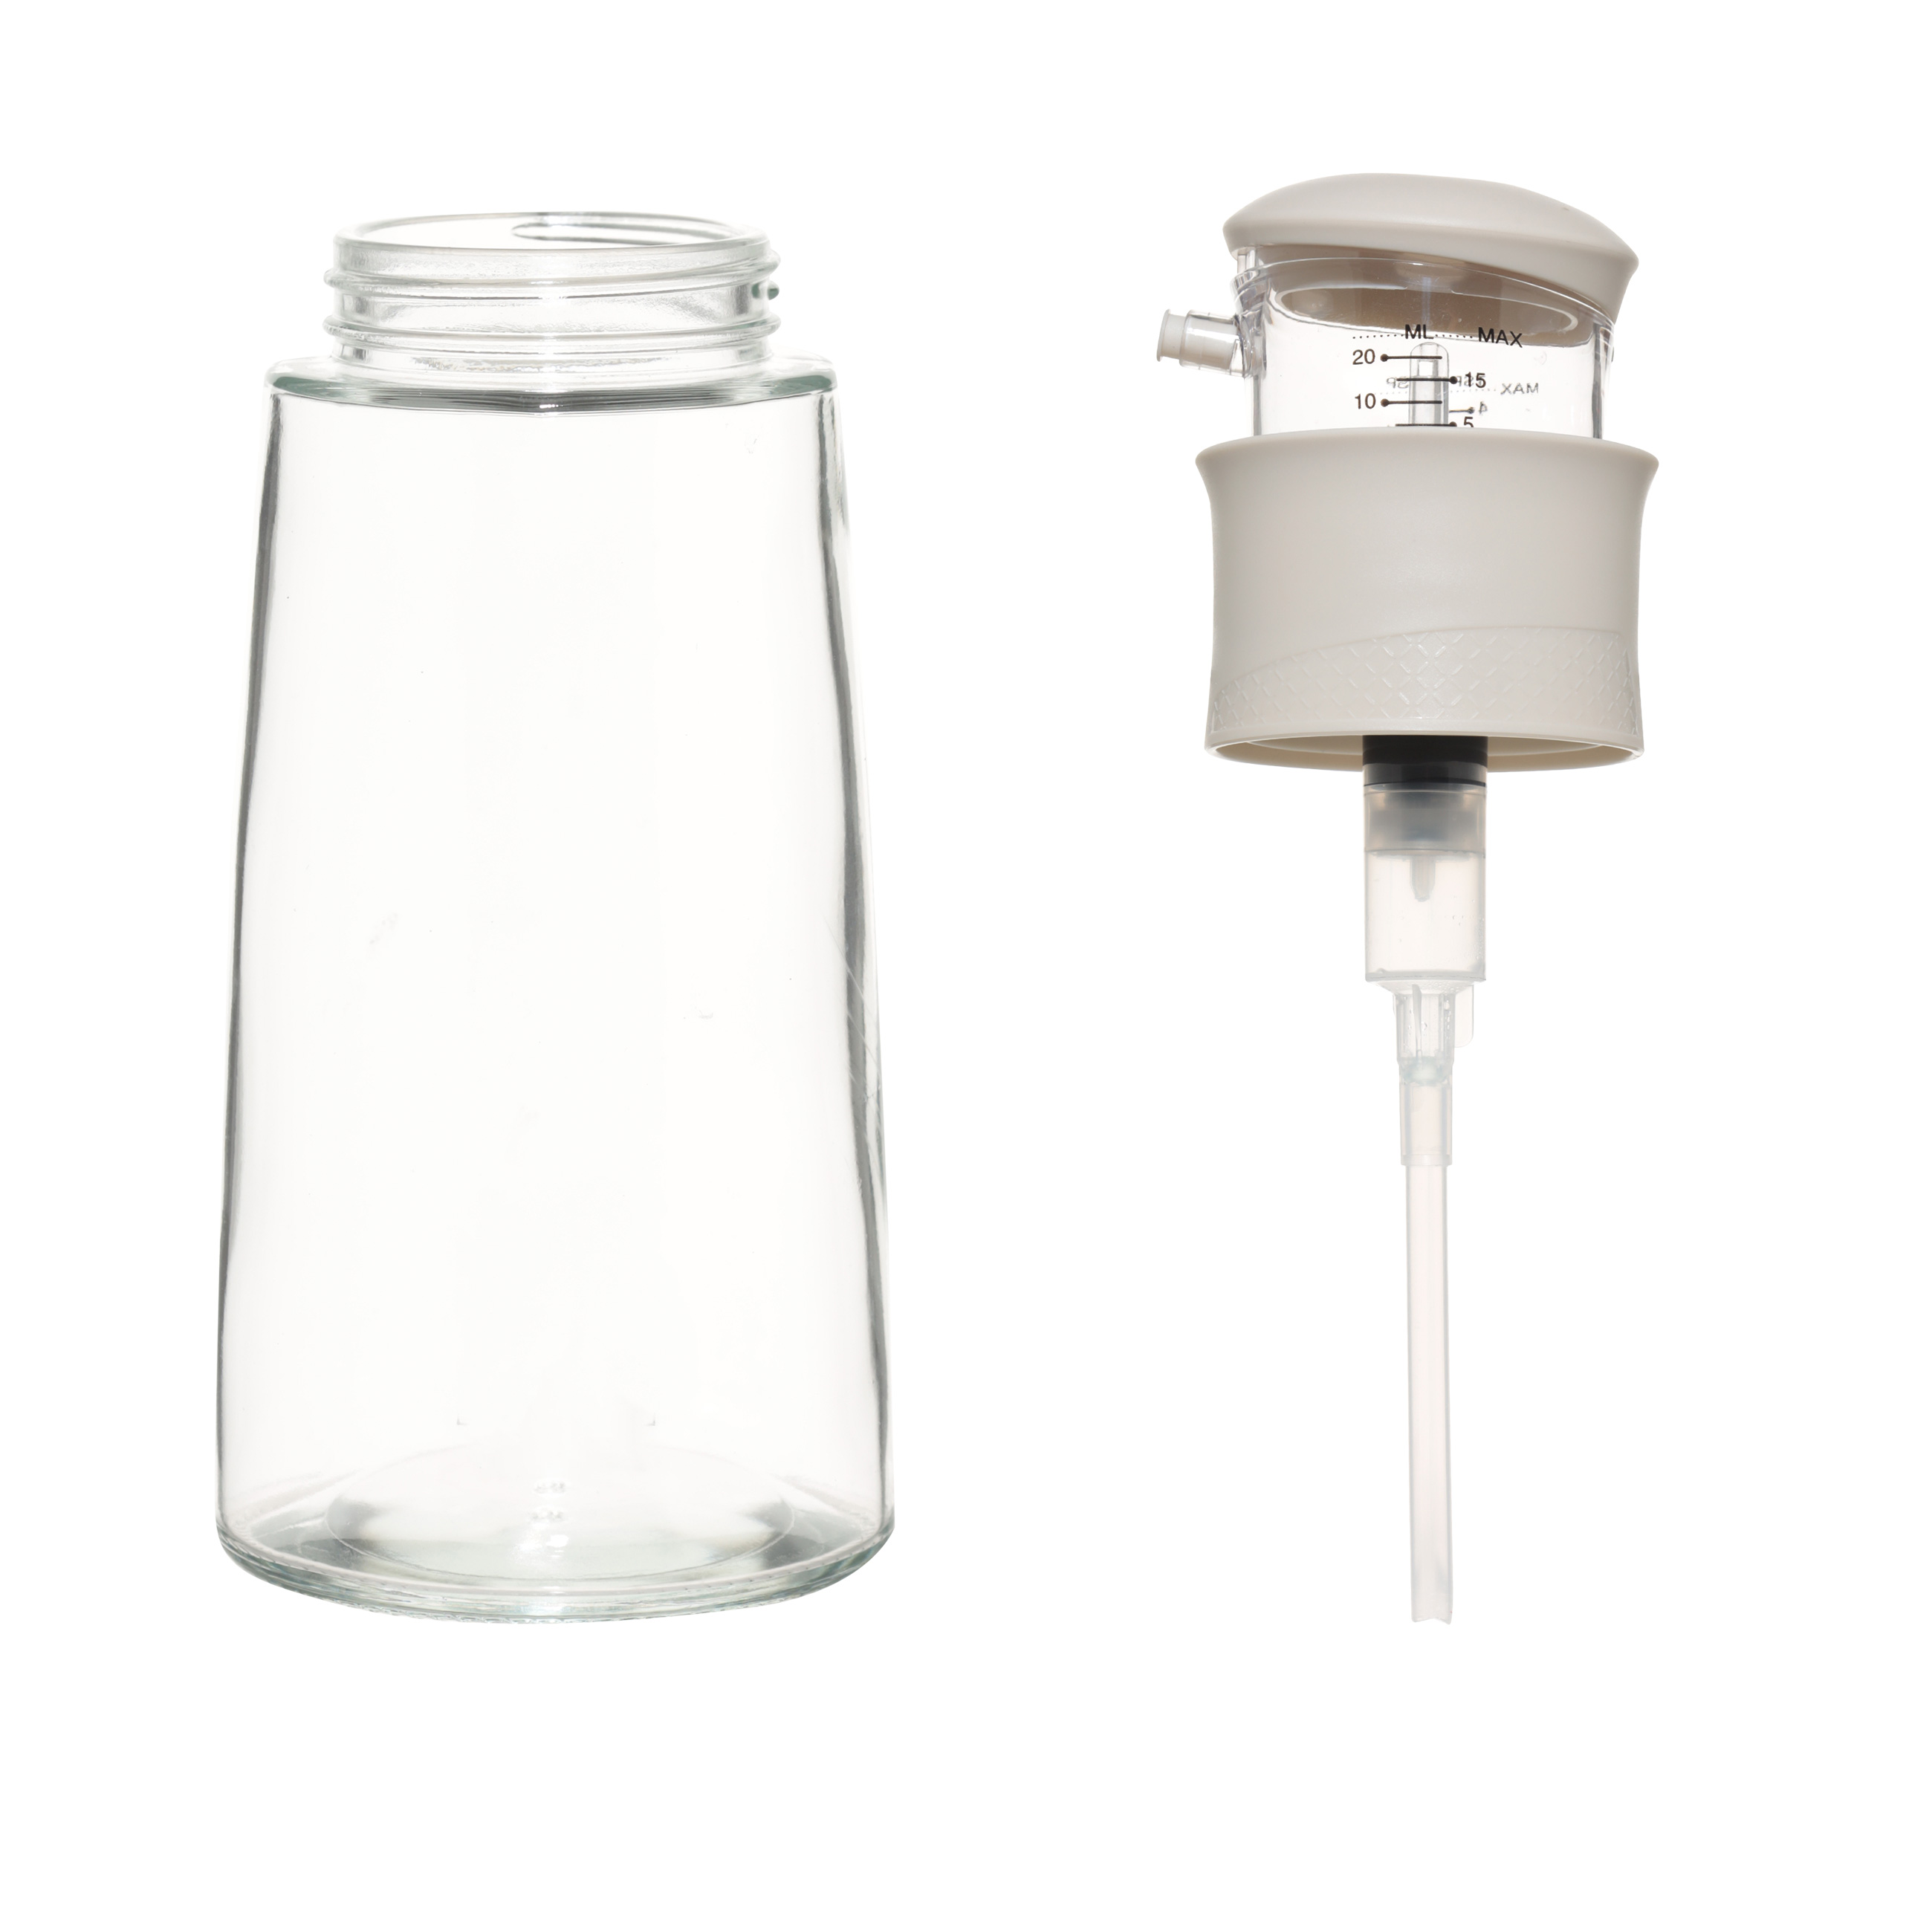 Бутылка для масла или уксуса, 320 мл, с мерным дозатором, стекло/пластик, бежевая, Assist изображение № 2